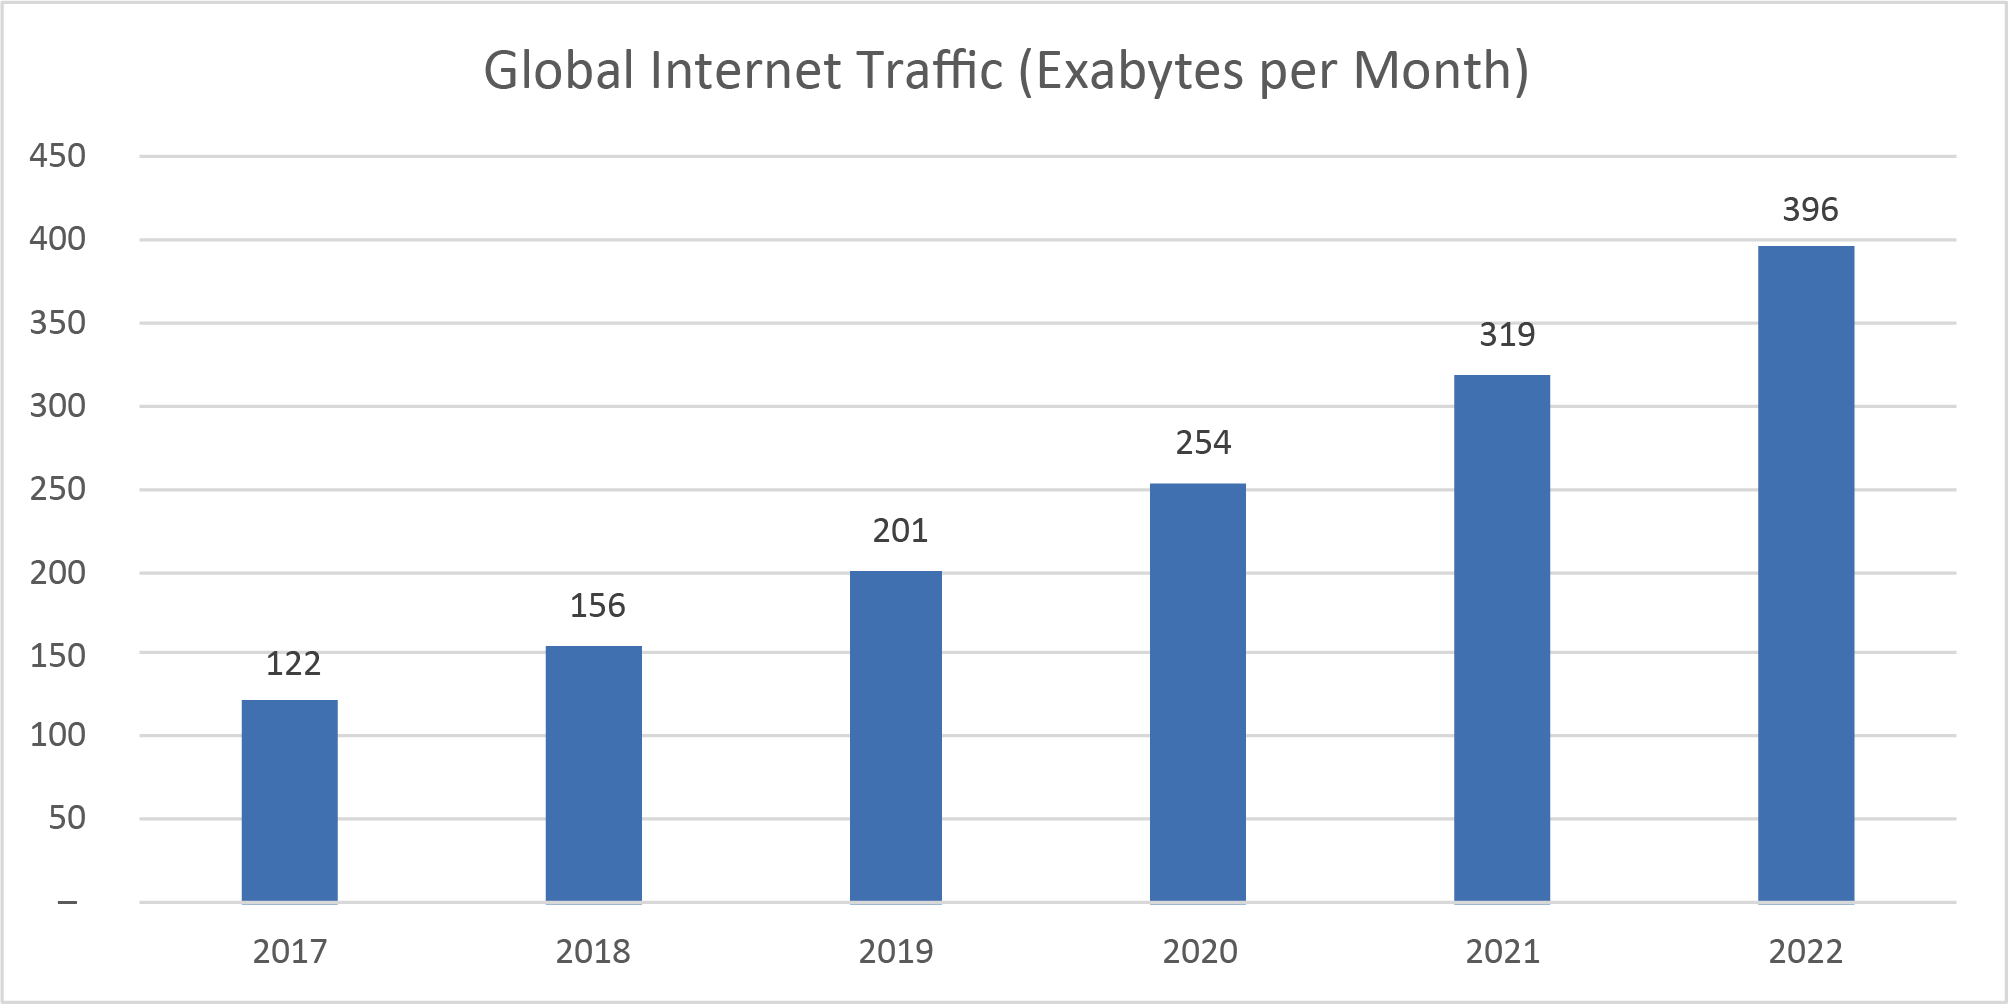 Source: Cisco, 1 Exabyte = 1 billion Gigabytes